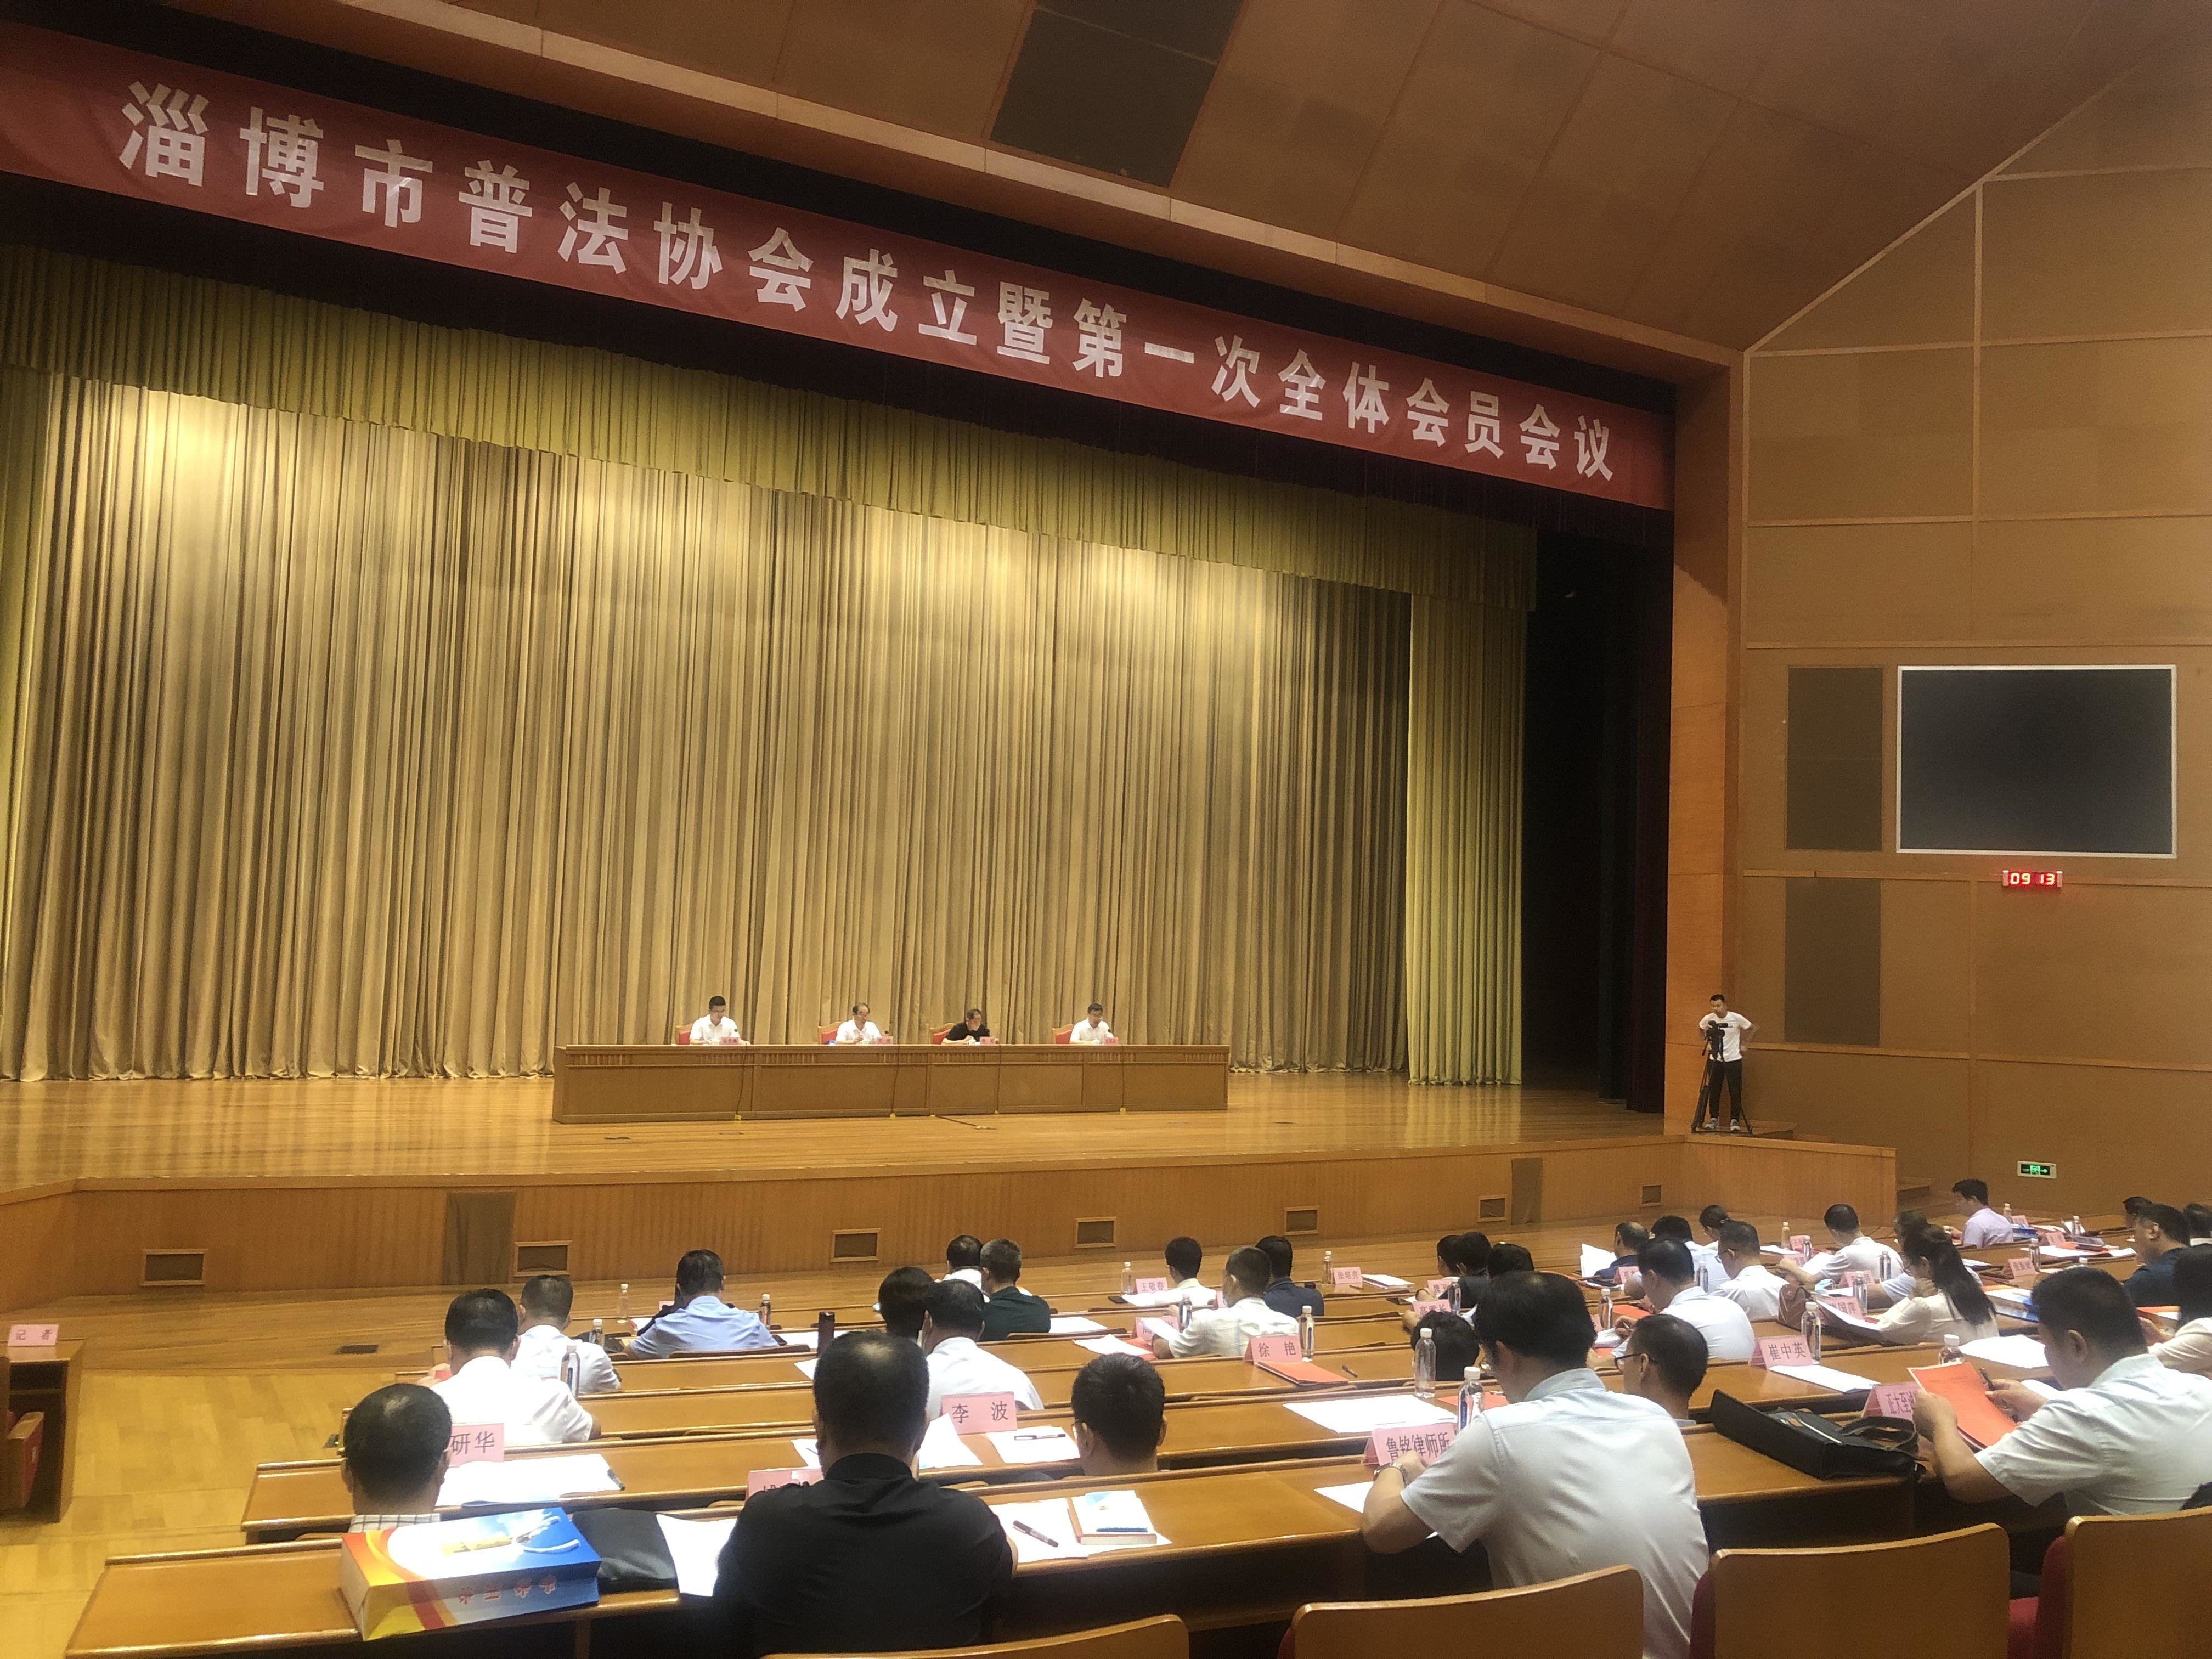 快讯 | 淄博市普法协会成立暨第一次全体会员会议召开